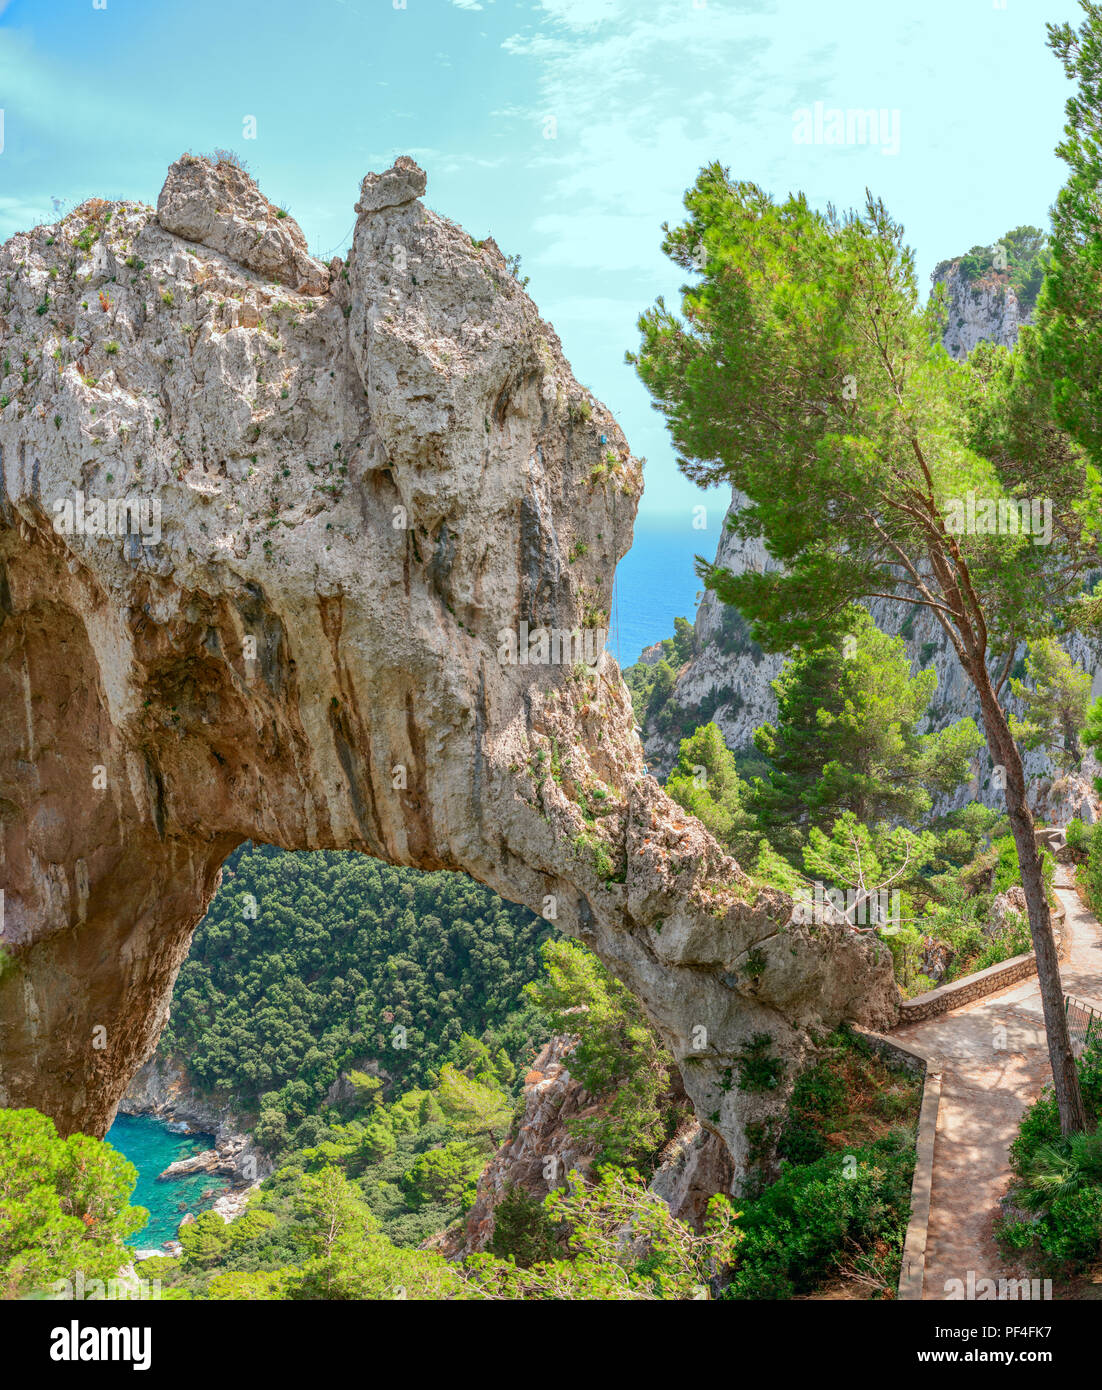 L'Arco Naturale (Arco naturale) su Capri, Italia, come visto dalla vicina area di visualizzazione. Foto Stock